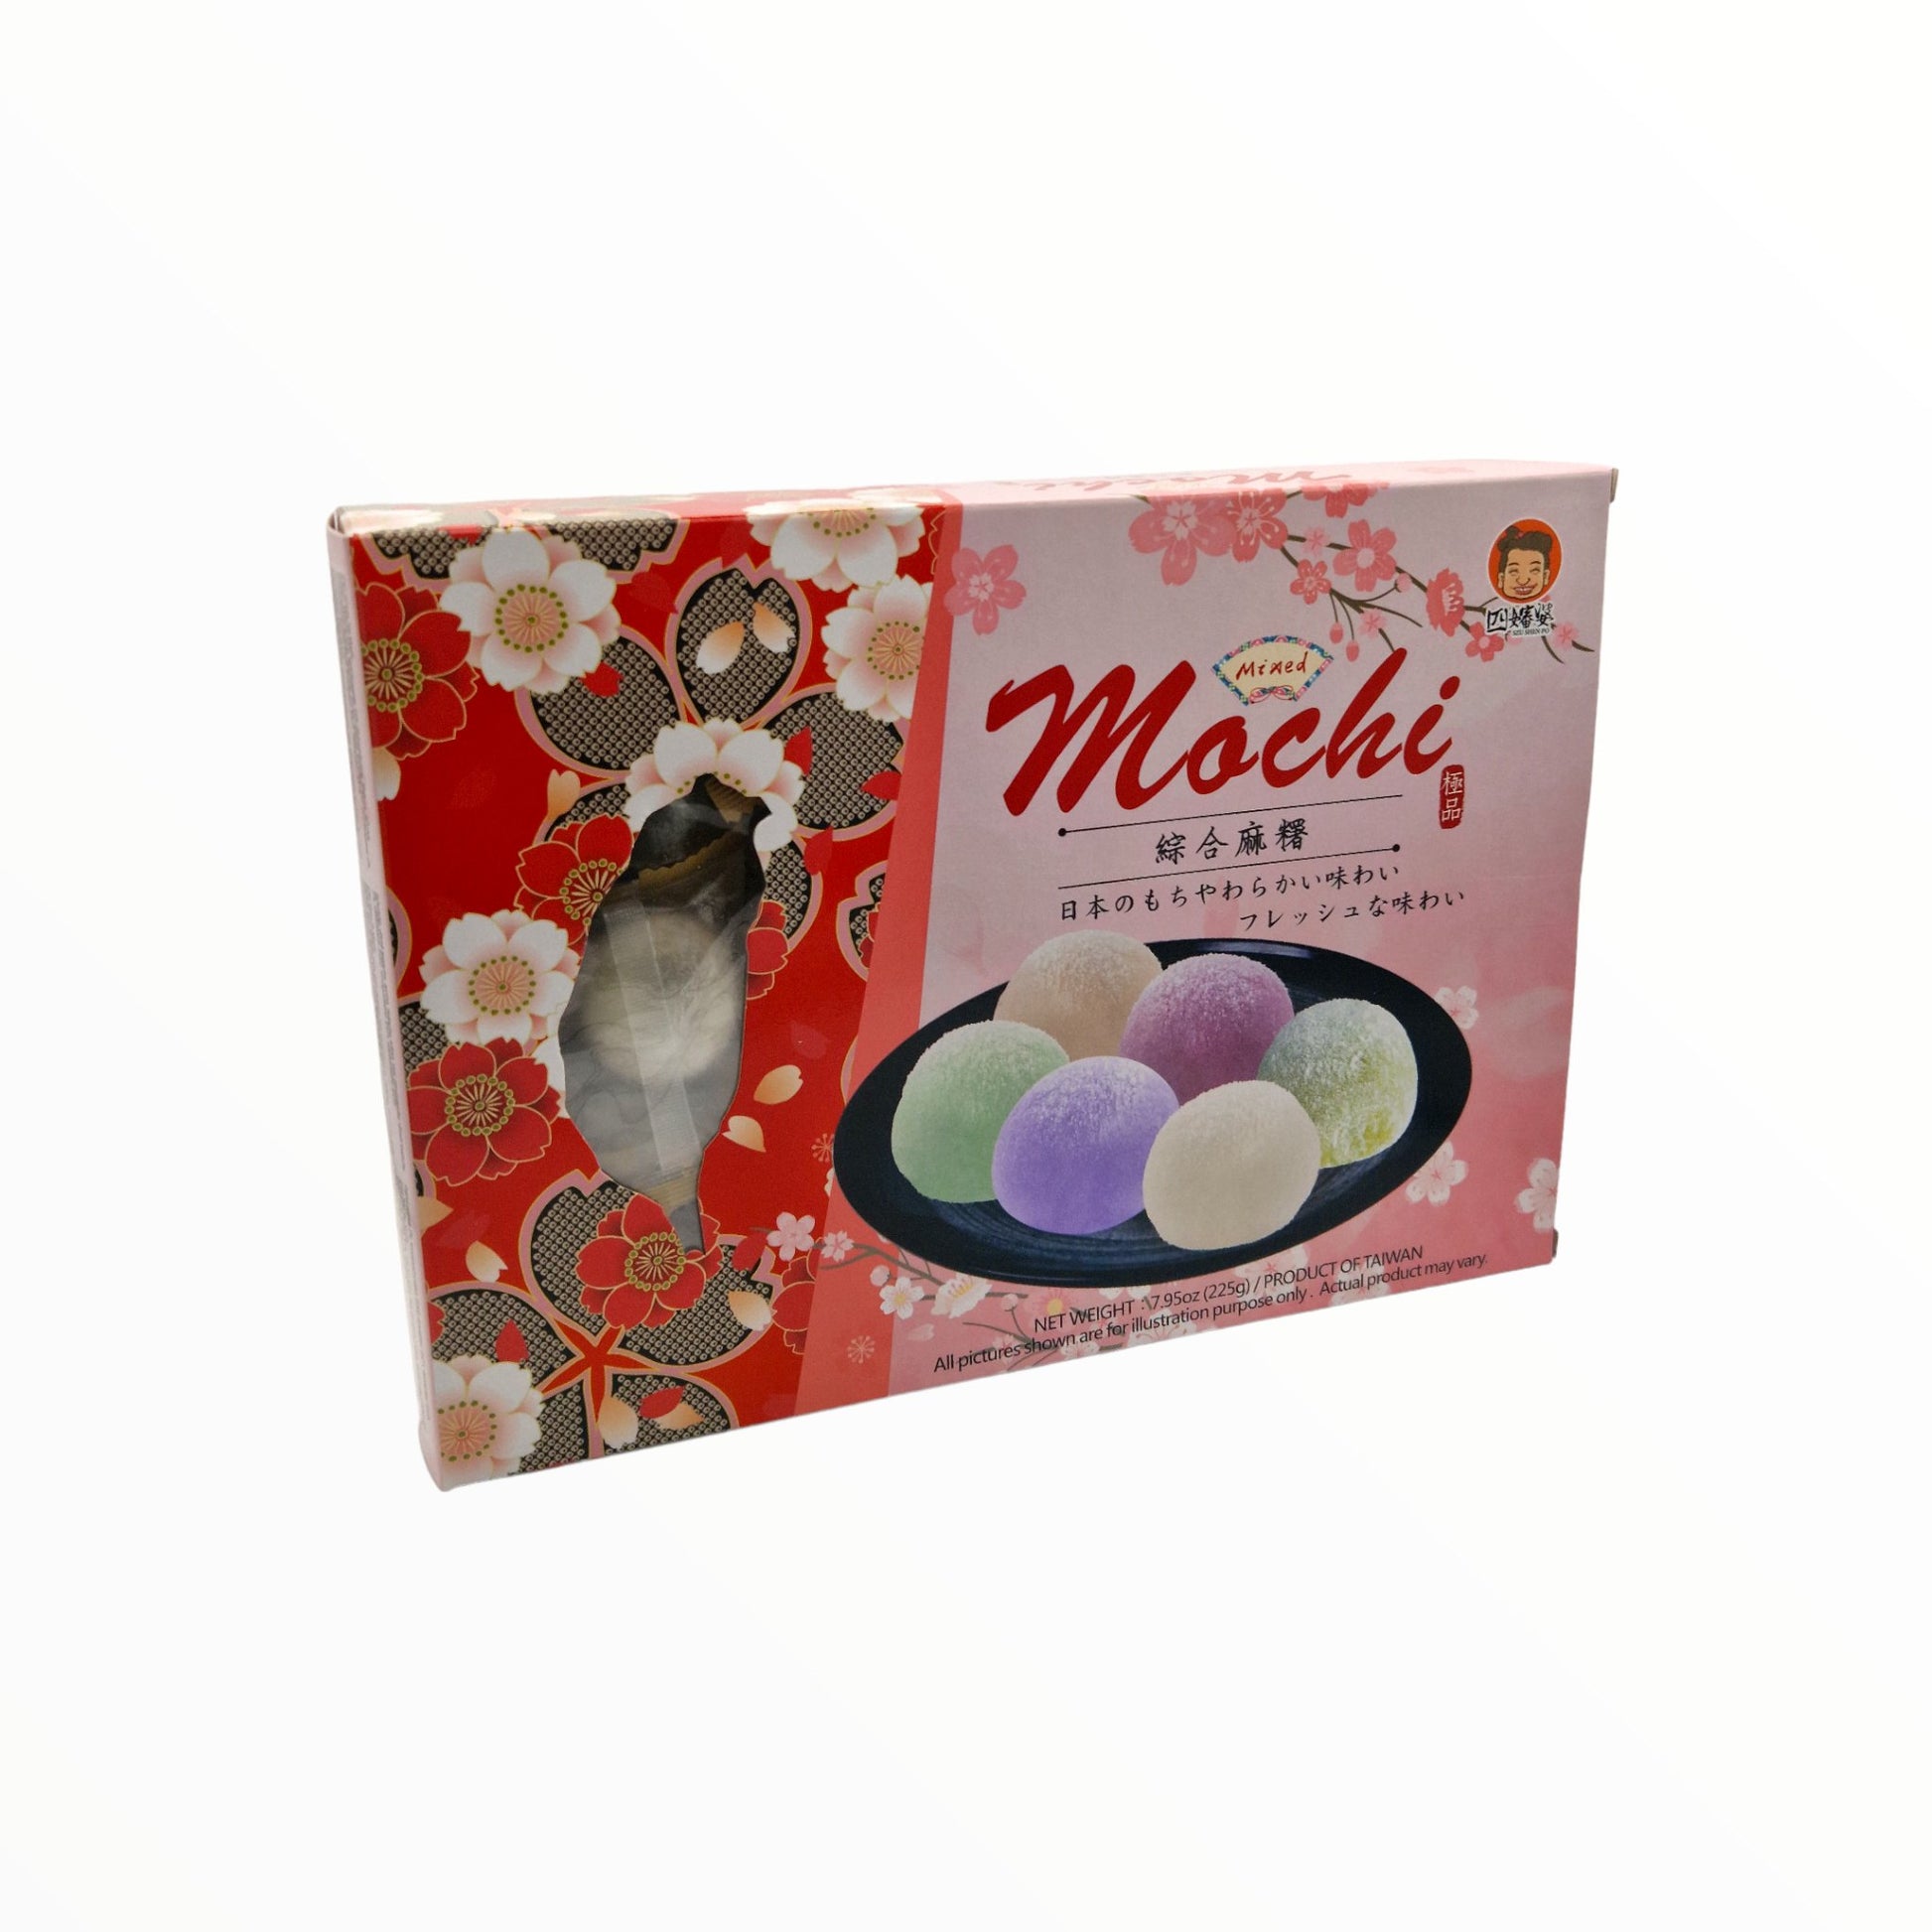 Mixed Mochi 225g - Mabuhay Pinoy Asia Shop